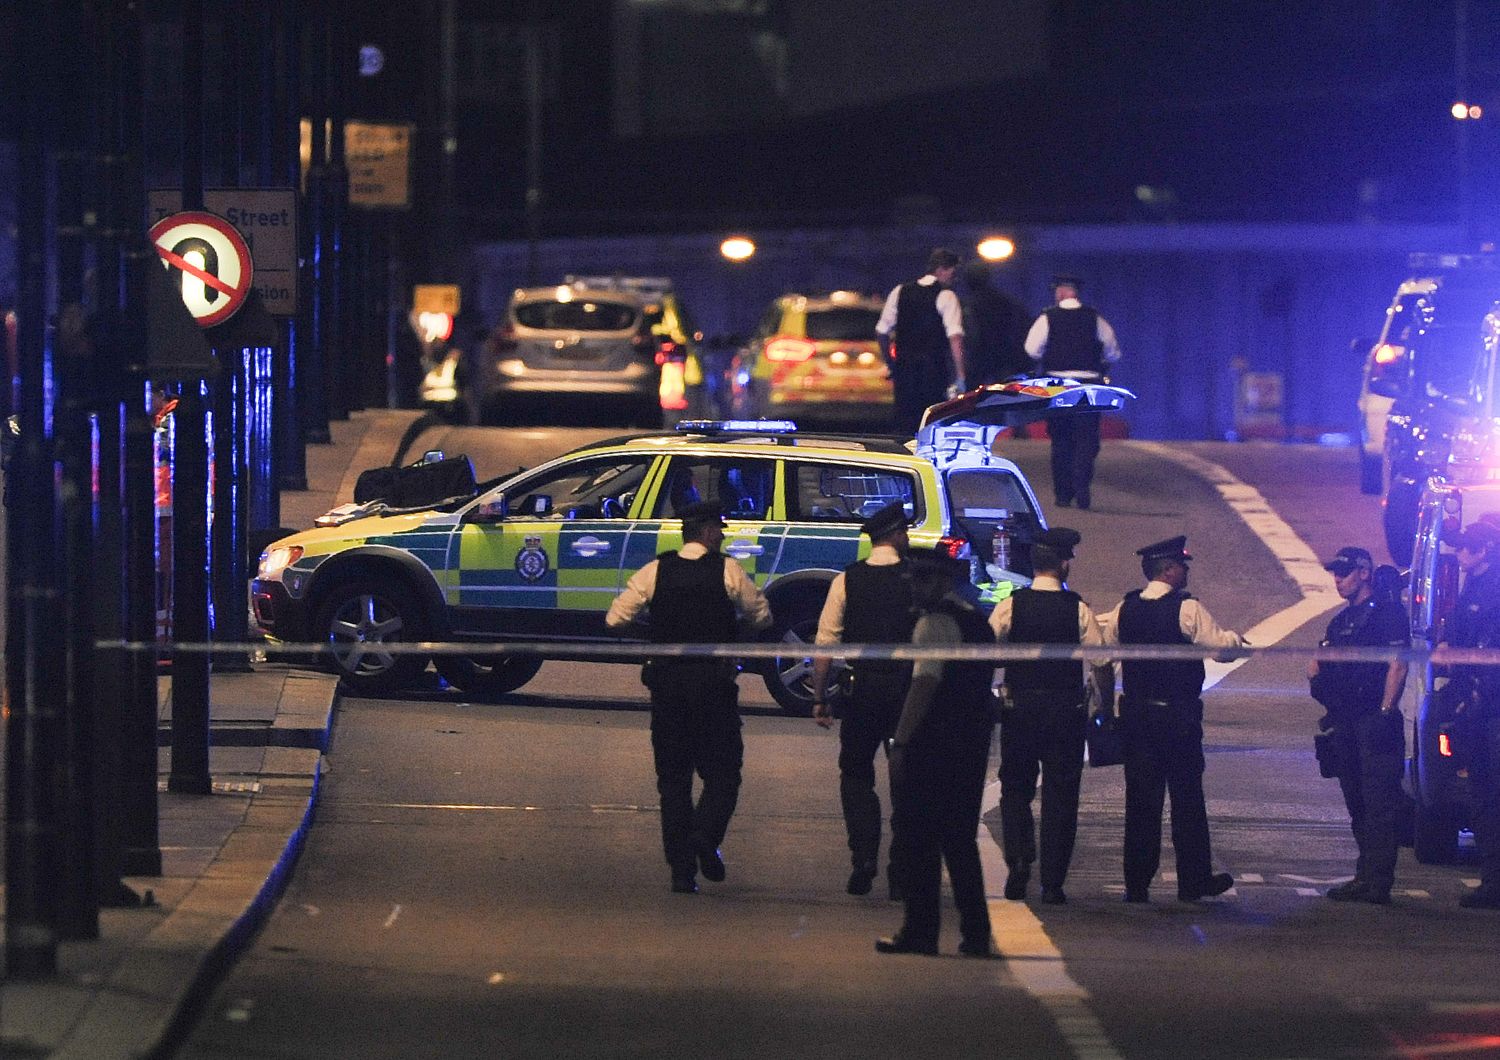 Furgone sulla folla a Londra. Durante tutta la notte e questa mattina le forze speciali e la Polizia stanno battendo a tappeto la citt&agrave; alla ricerca di possibili complici dei terroristi che ieri sera si sono lanciati con un furgone sulla folla a London Bridge, facendo 7 morti. La Polizia non esclude nuovi attentati, ma invita la cittadinanza ad una 'calma vigile'. Per ora, 48 i feriti. Afp)